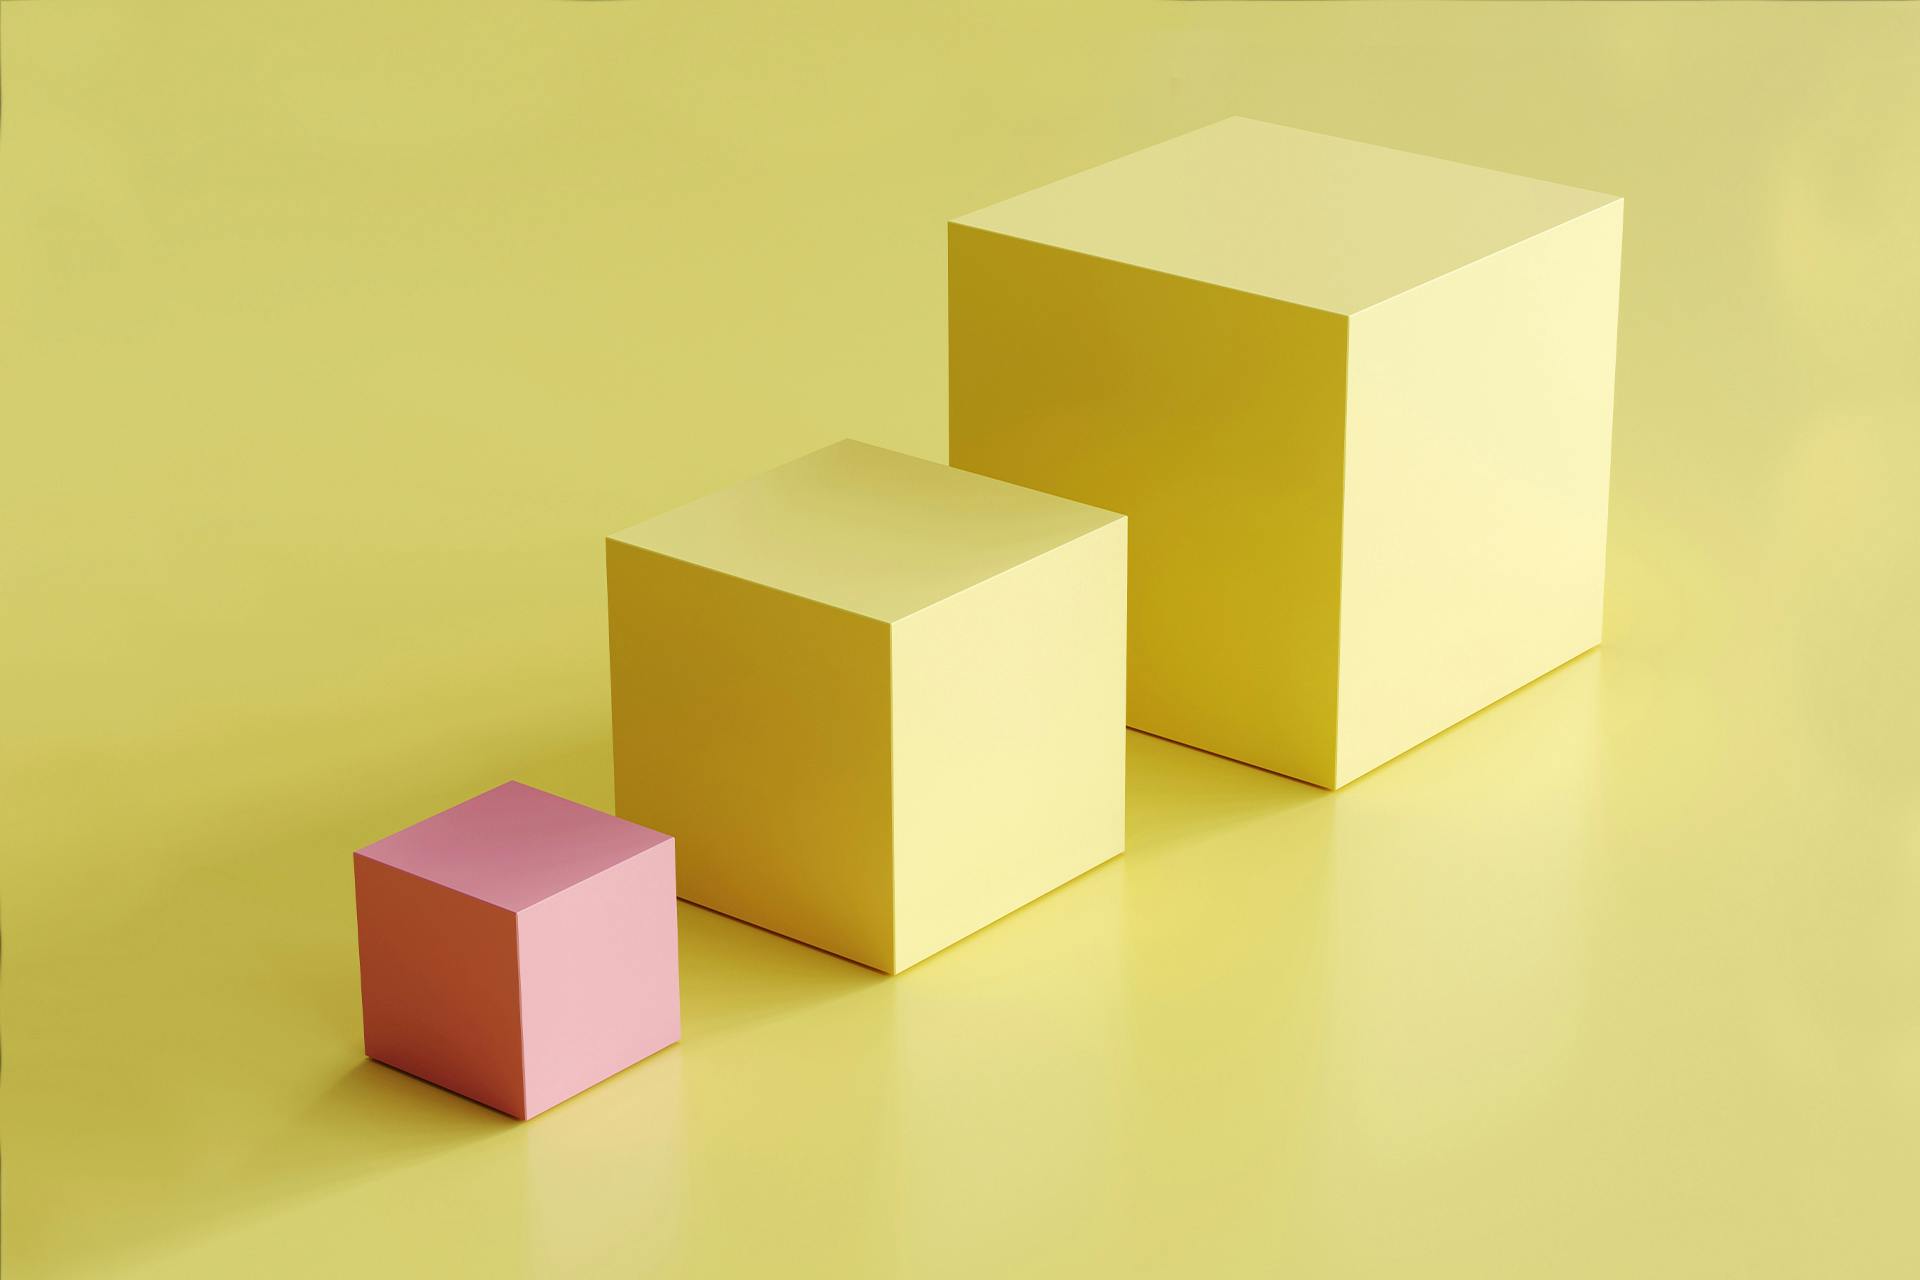 Een stel blokken: twee grote gele kubussen en een kleinere roze kubus. De roze kubus steekt duidelijk af tegen de andere gele kubussen, wat dit beeld perfect geschikt maakt voor onze blog over merkextensies en hoe je ze in je strategie kunt opnemen.